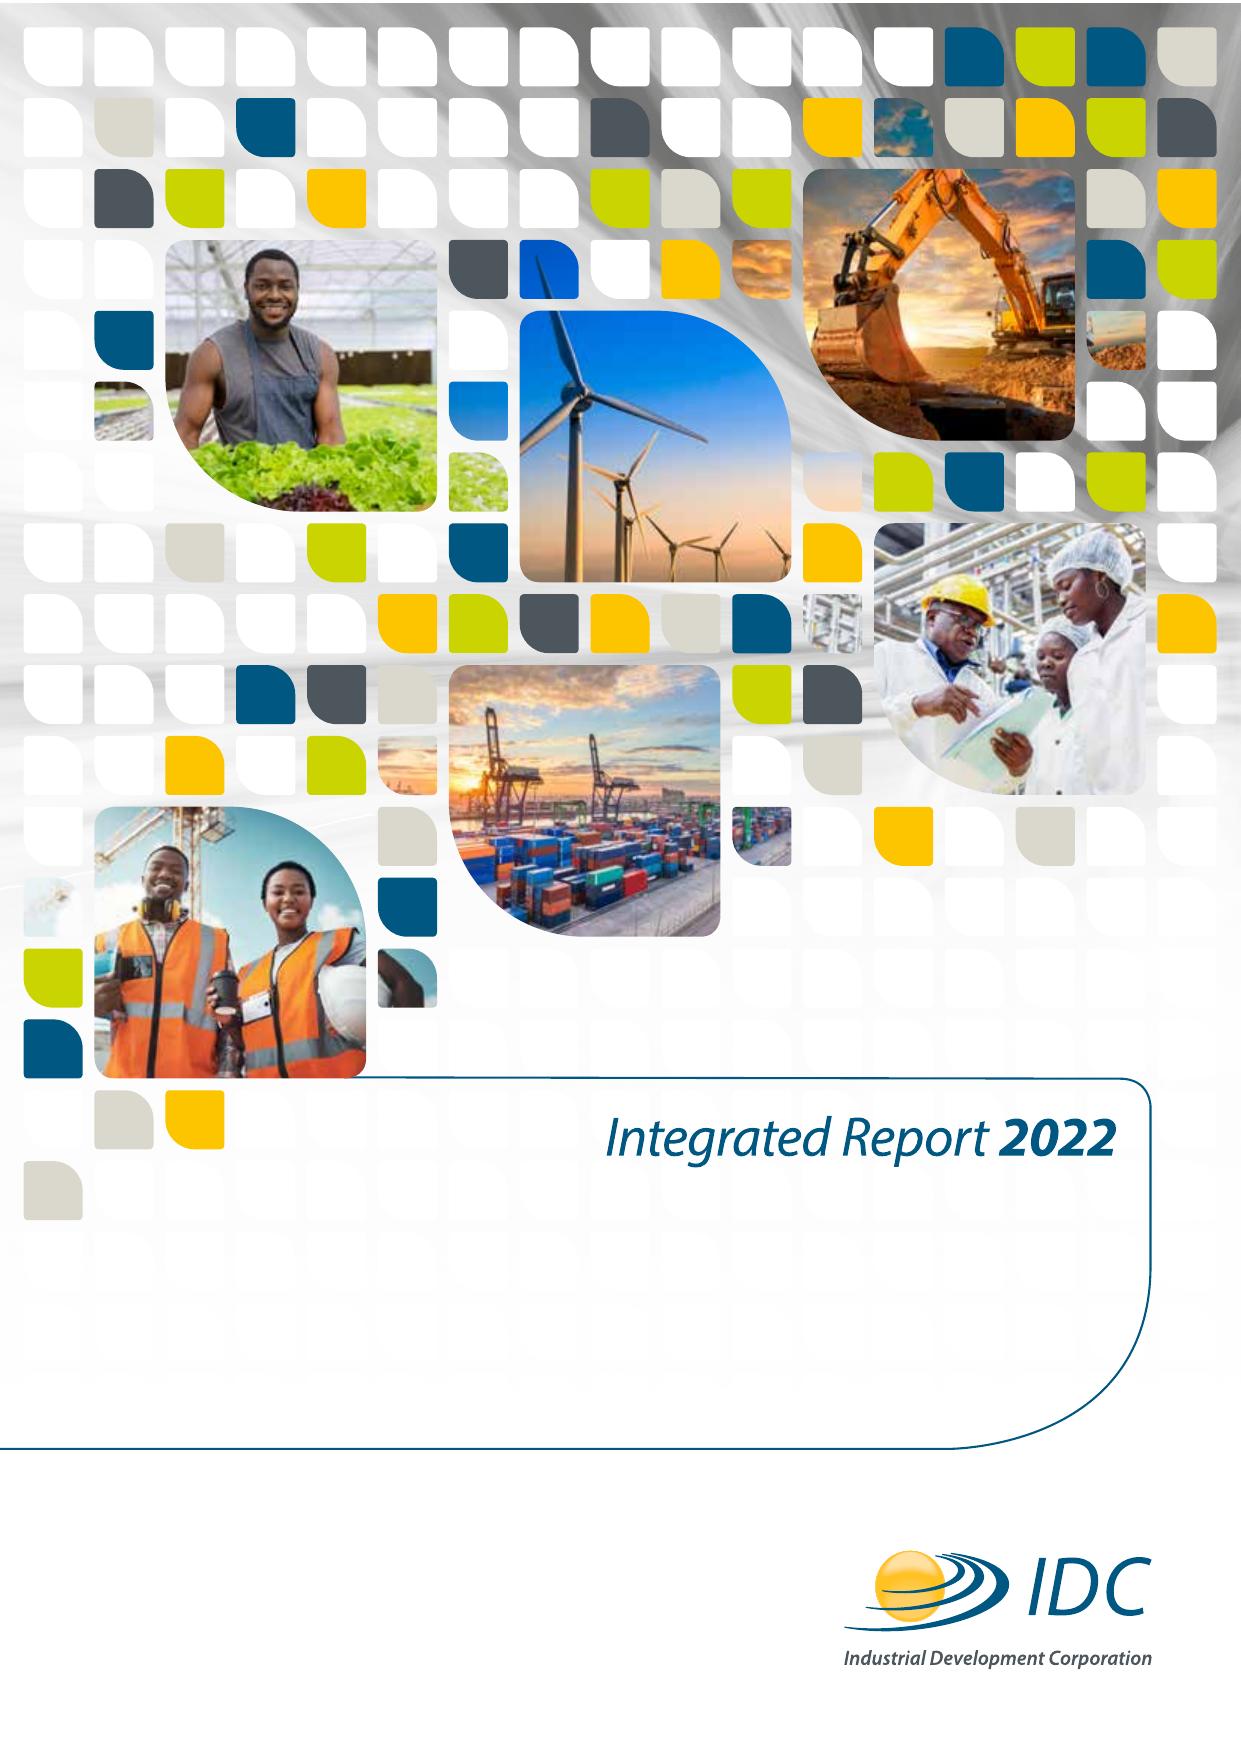 IDC 2022 Annual Report